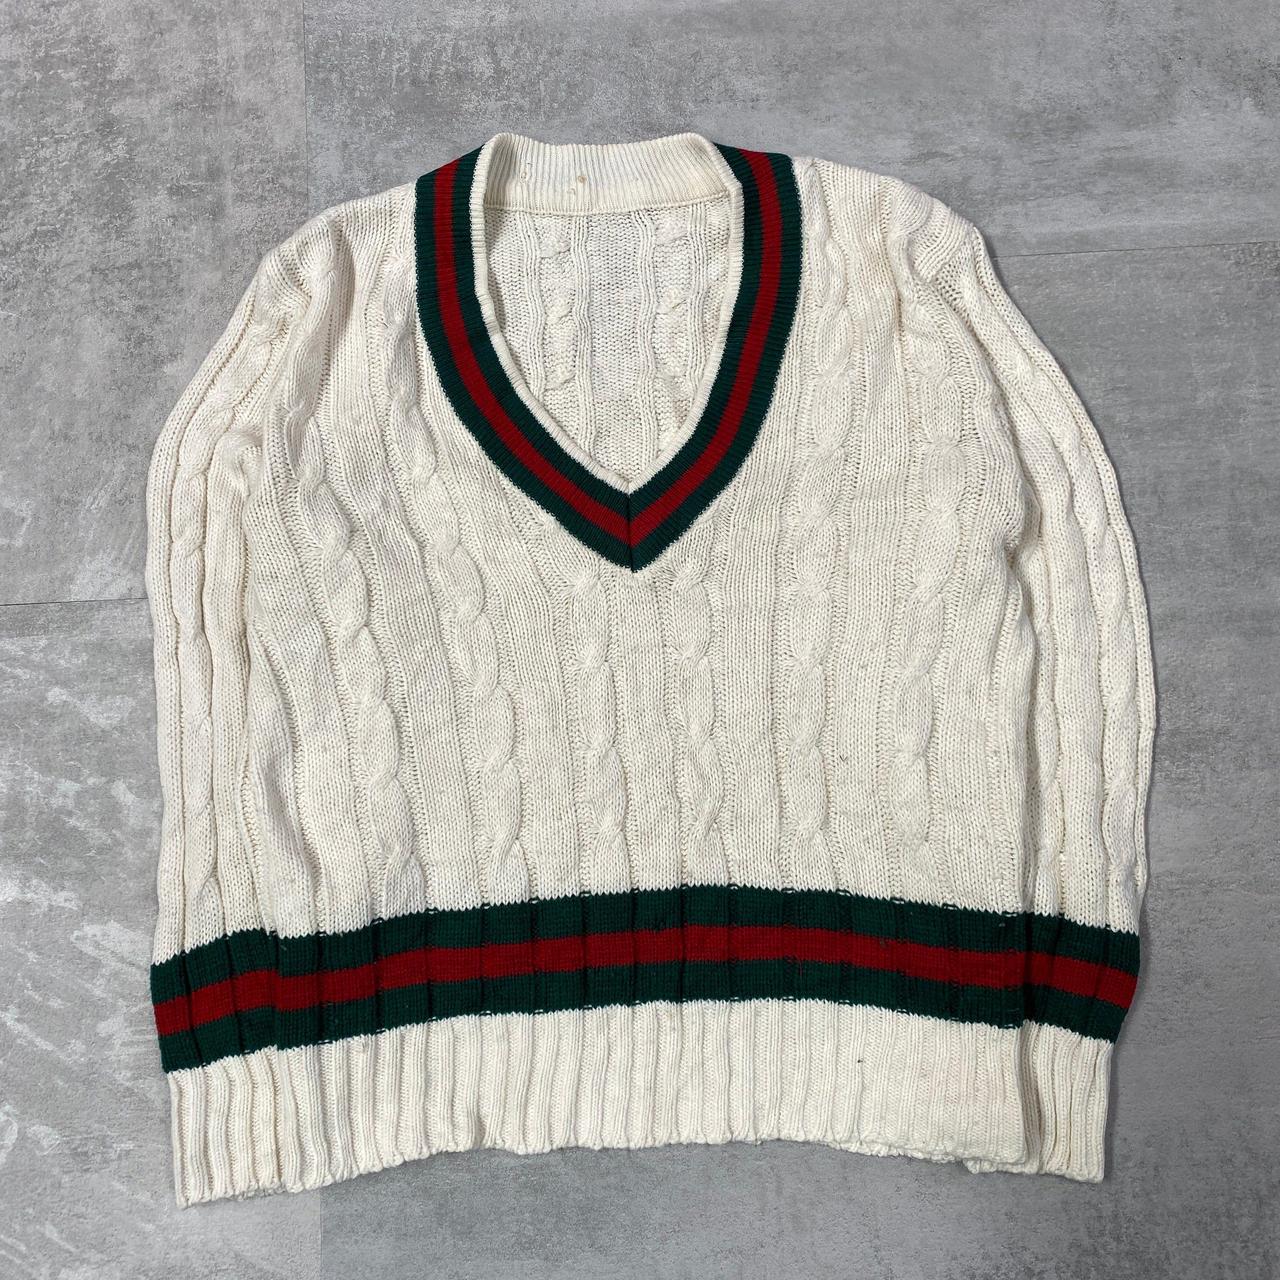 Beige Preppy Knitted Knitwear Sweater Size on... - Depop